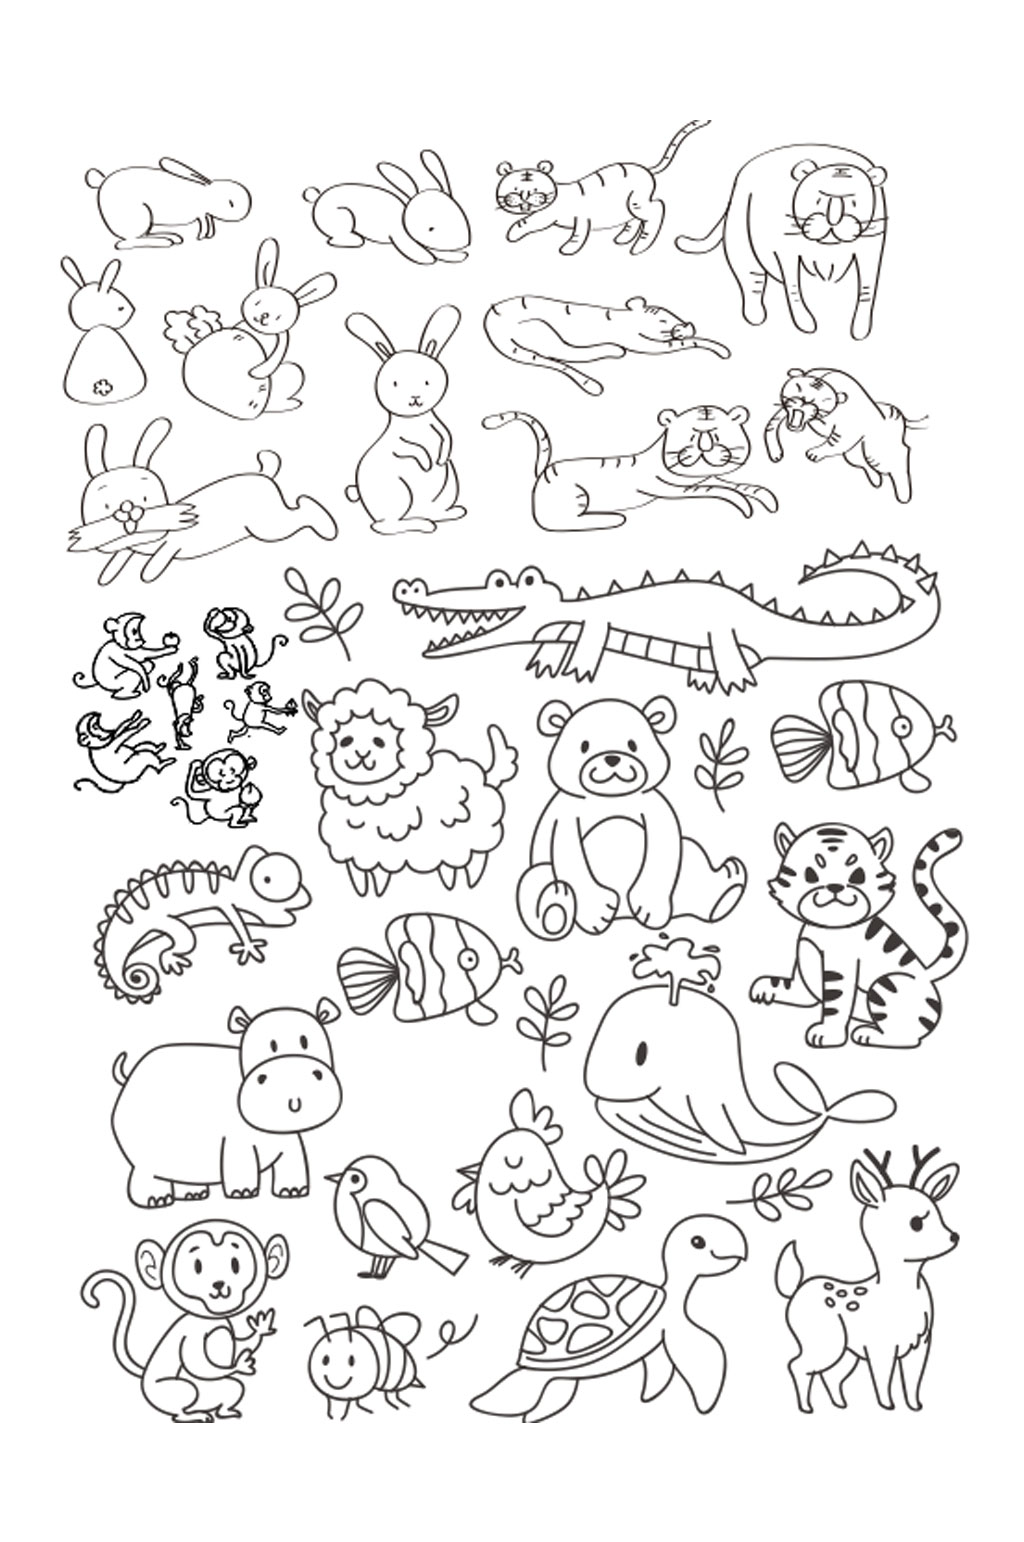 100只动物简笔画简单图片